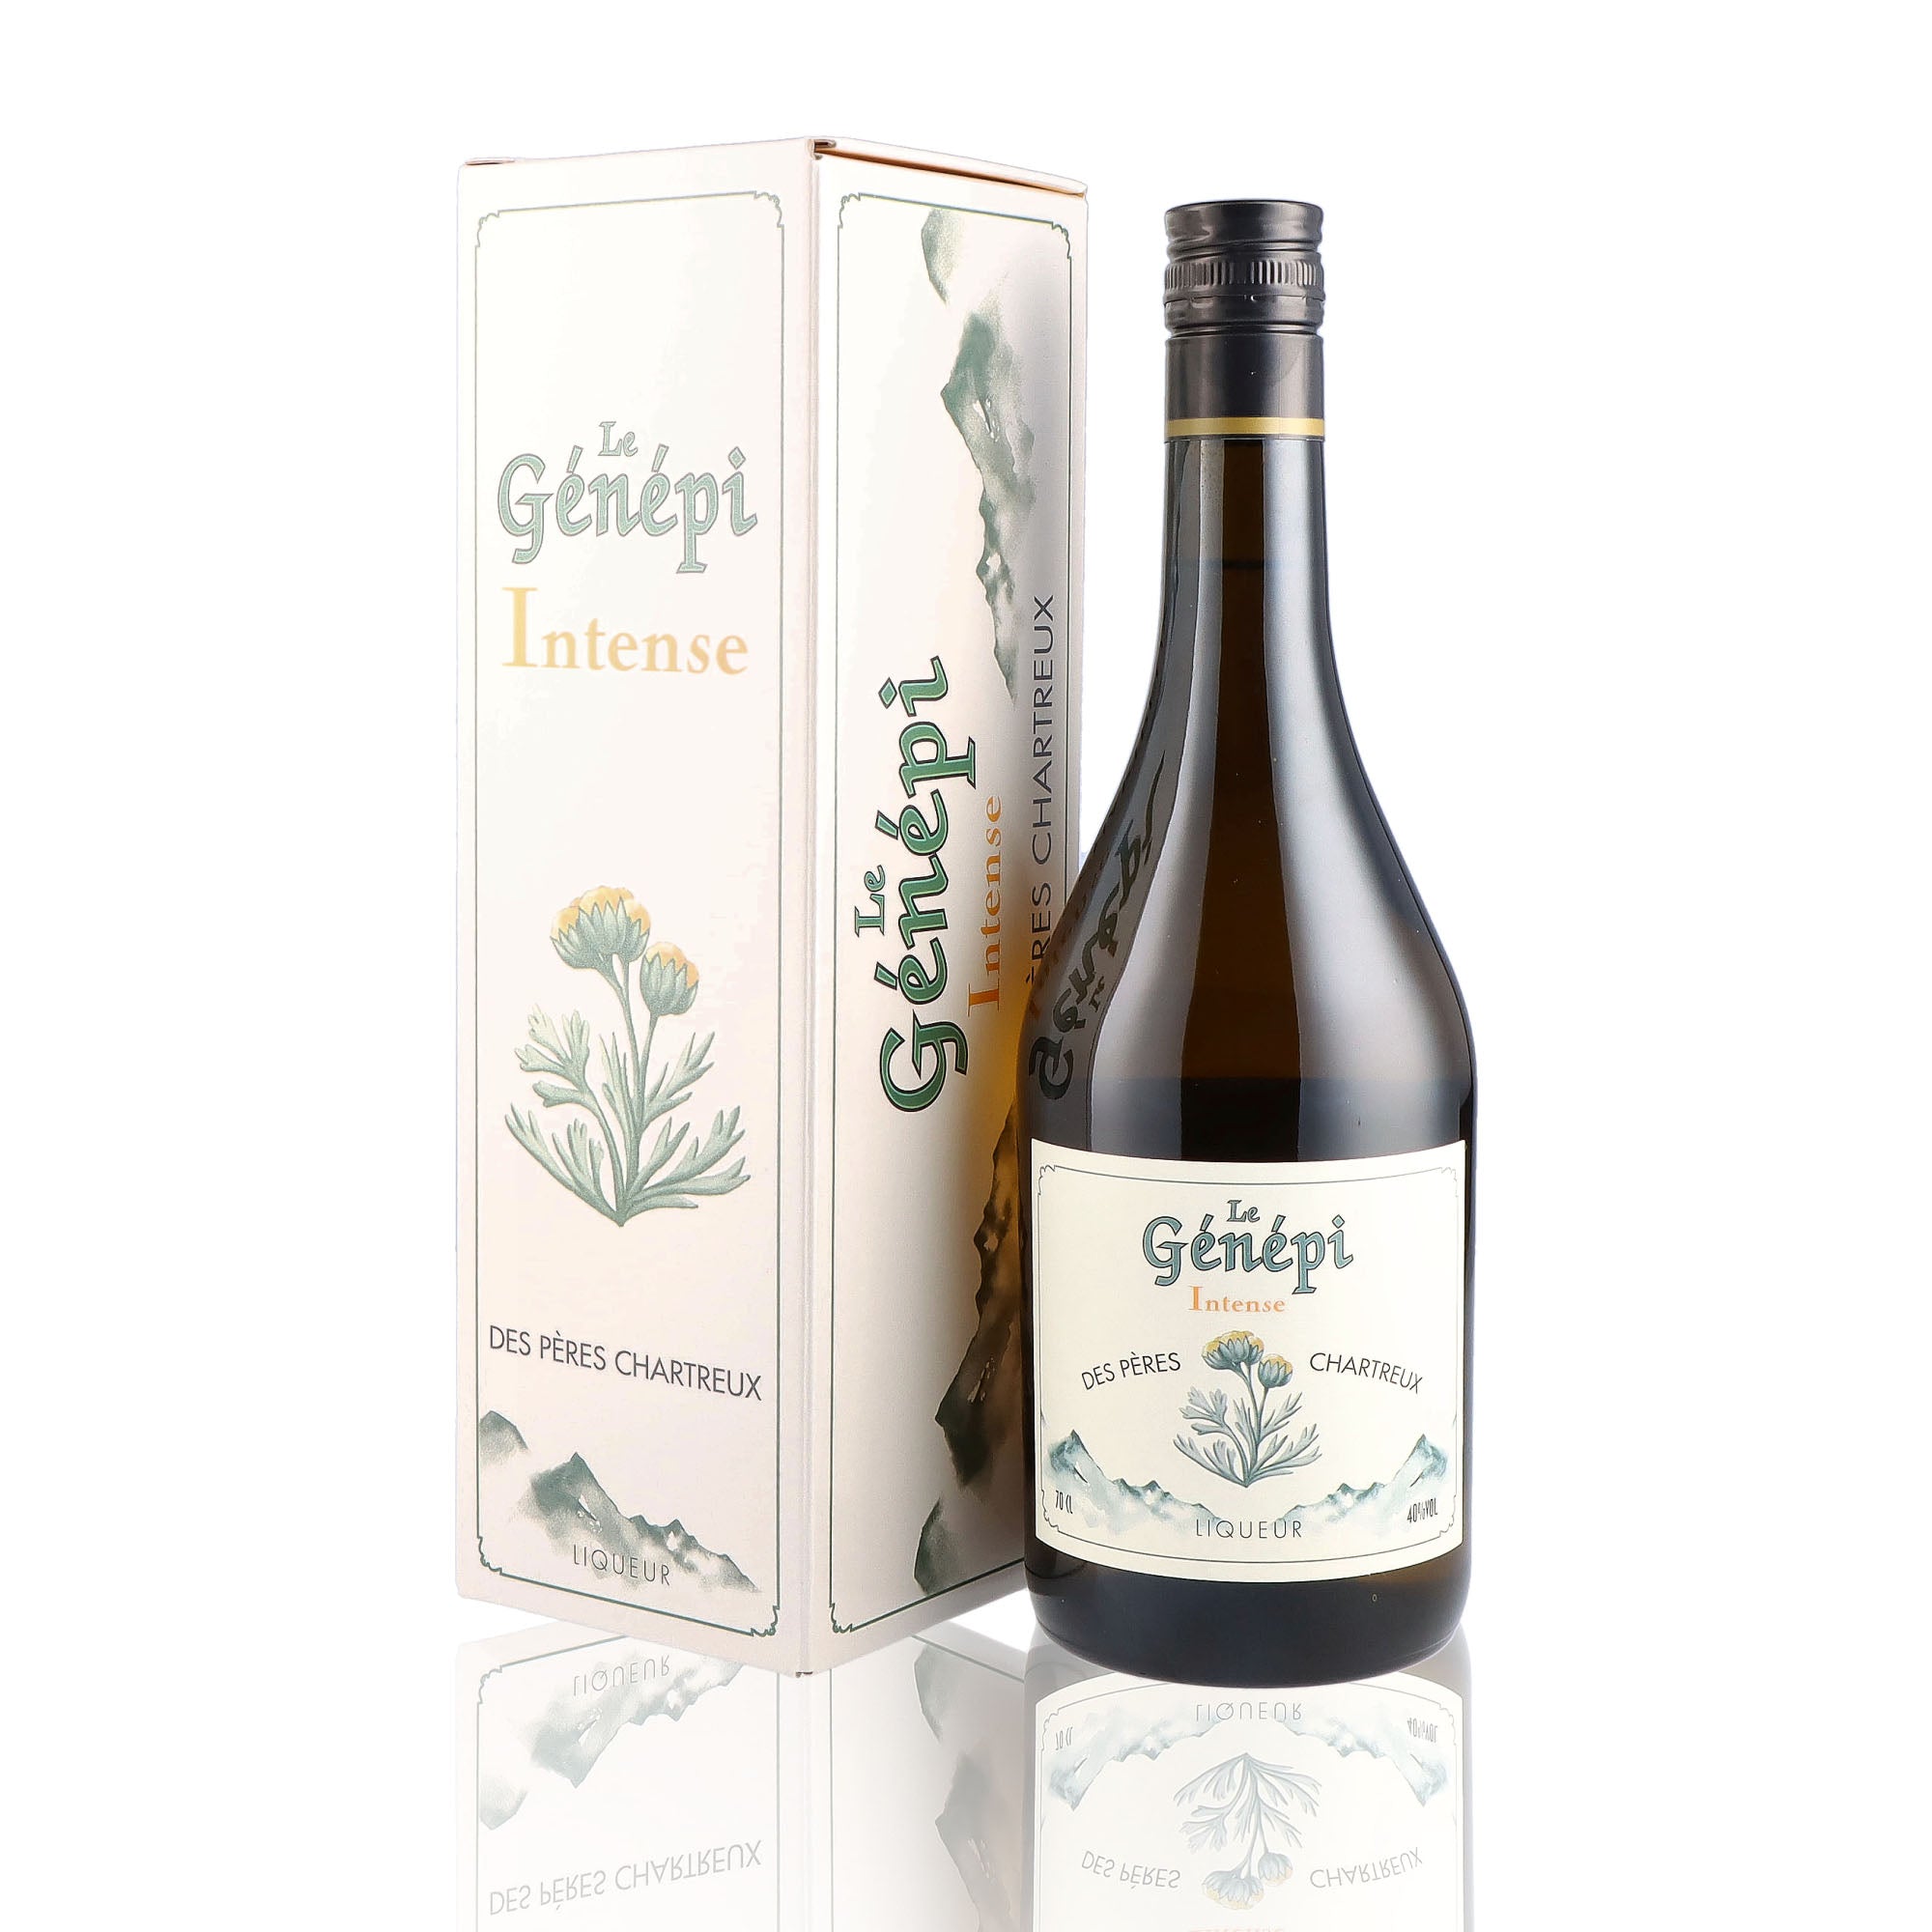 Une bouteille de Liqueur, de la marque Chartreuse, nommée Genepi Intense des Pères Chartreux.